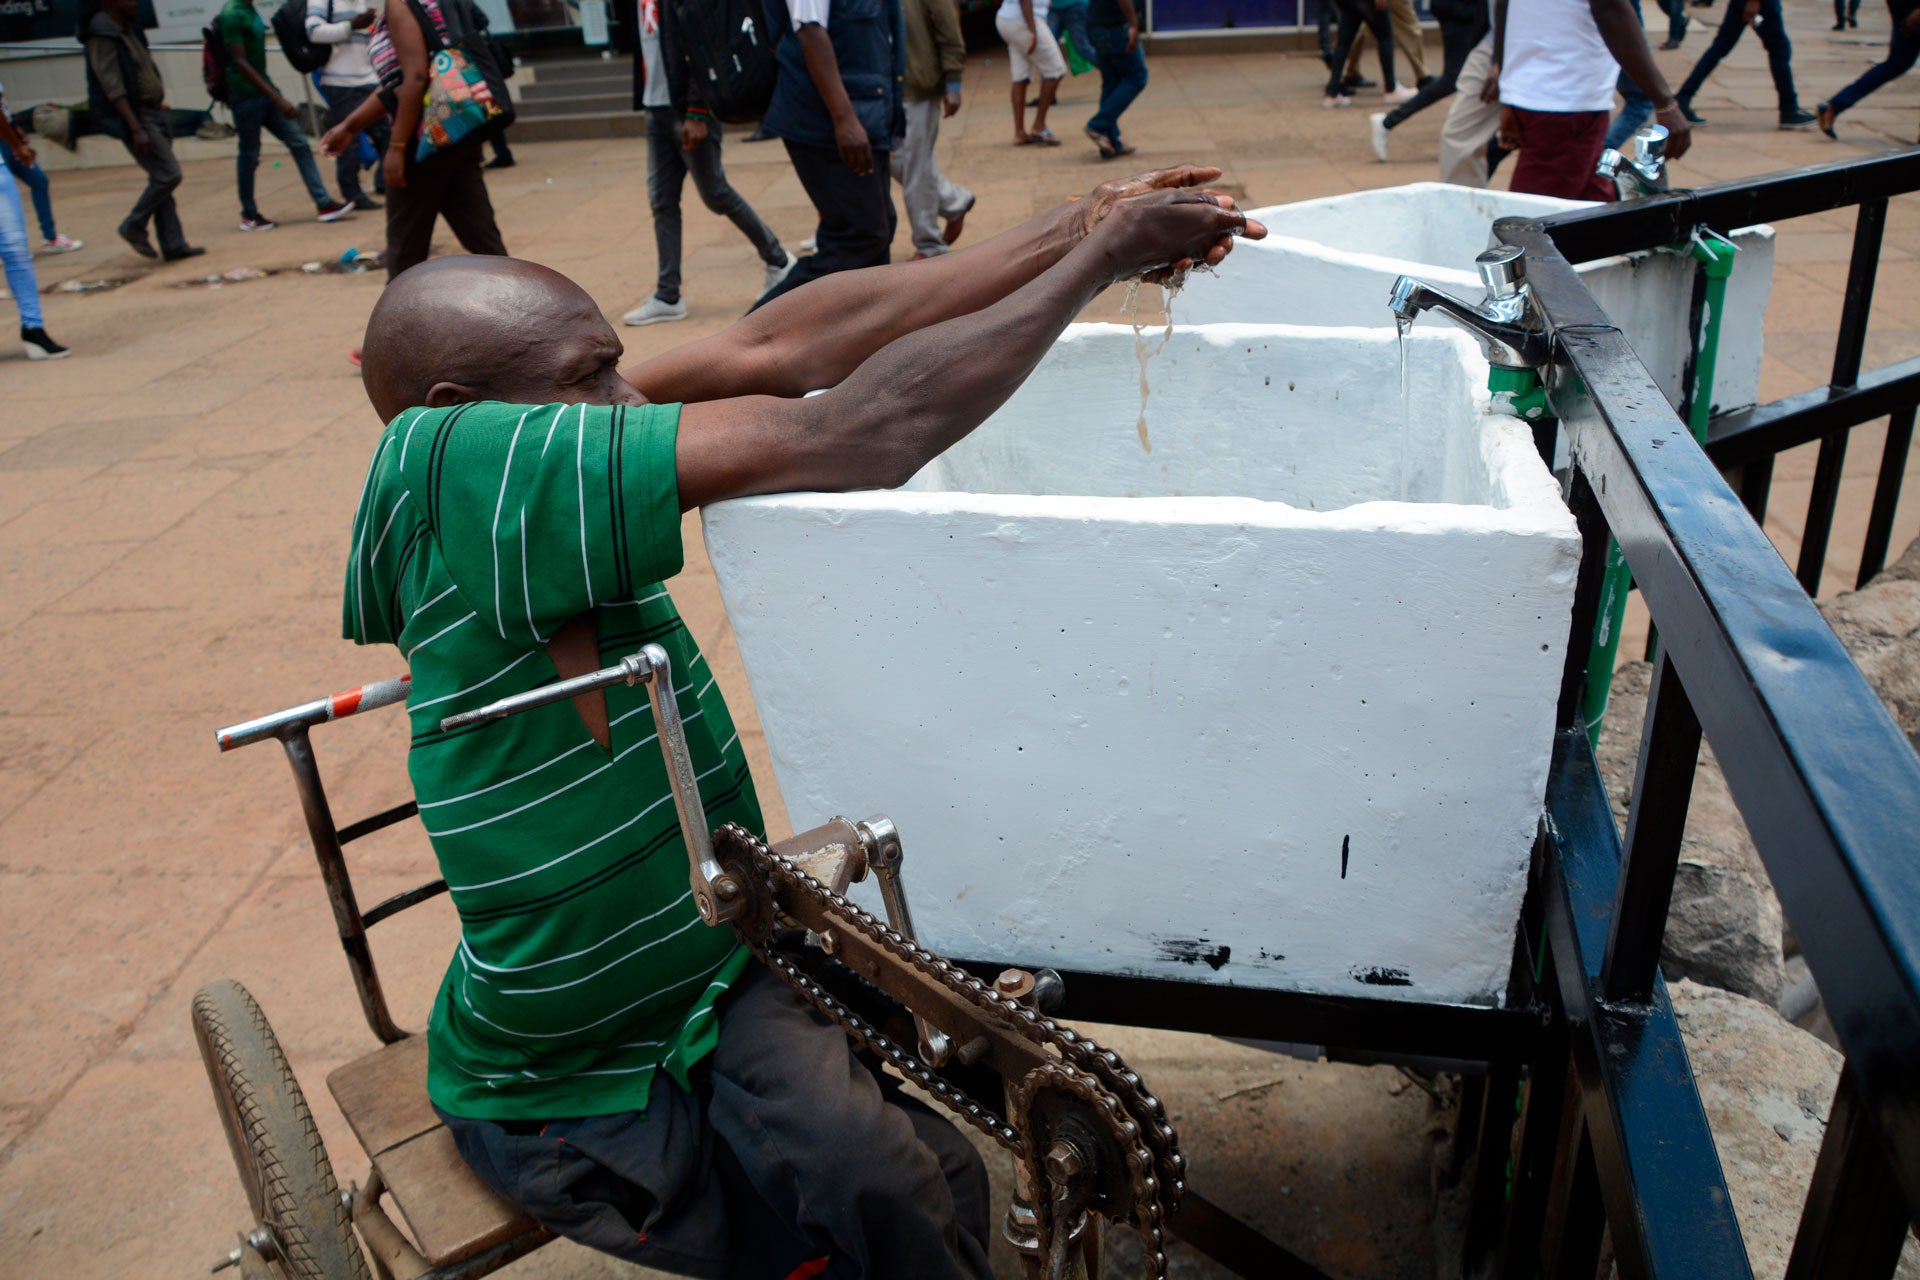 Un homme en fauteuil roulant se lave les mains à un point d’eau public à Nairobi, au Kenya, le 22 mars 2020, suivant les consignes sanitaires recommandées par les autorités dans le cadre de la lutte contre le COVID-19. Toutefois, ce geste vital est rendu 